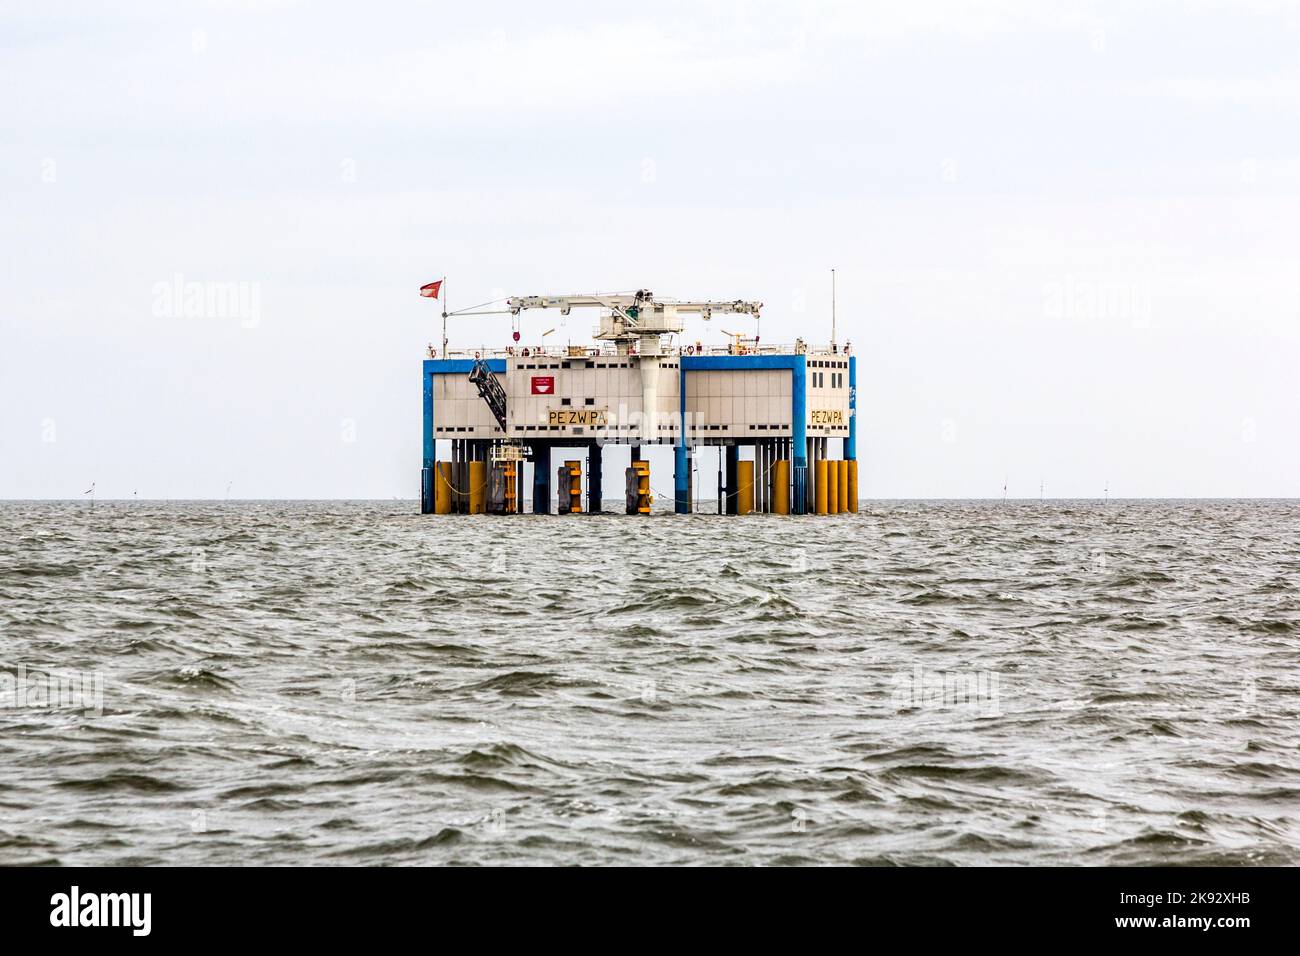 HARLINGEN, NEDERLANDE - 10 AGOSTO 2014: Carro petrolifero offshore vicino Harlingen, Nederlande. La produzione di petrolio è un importante fattore economico nei Paesi Bassi. Foto Stock